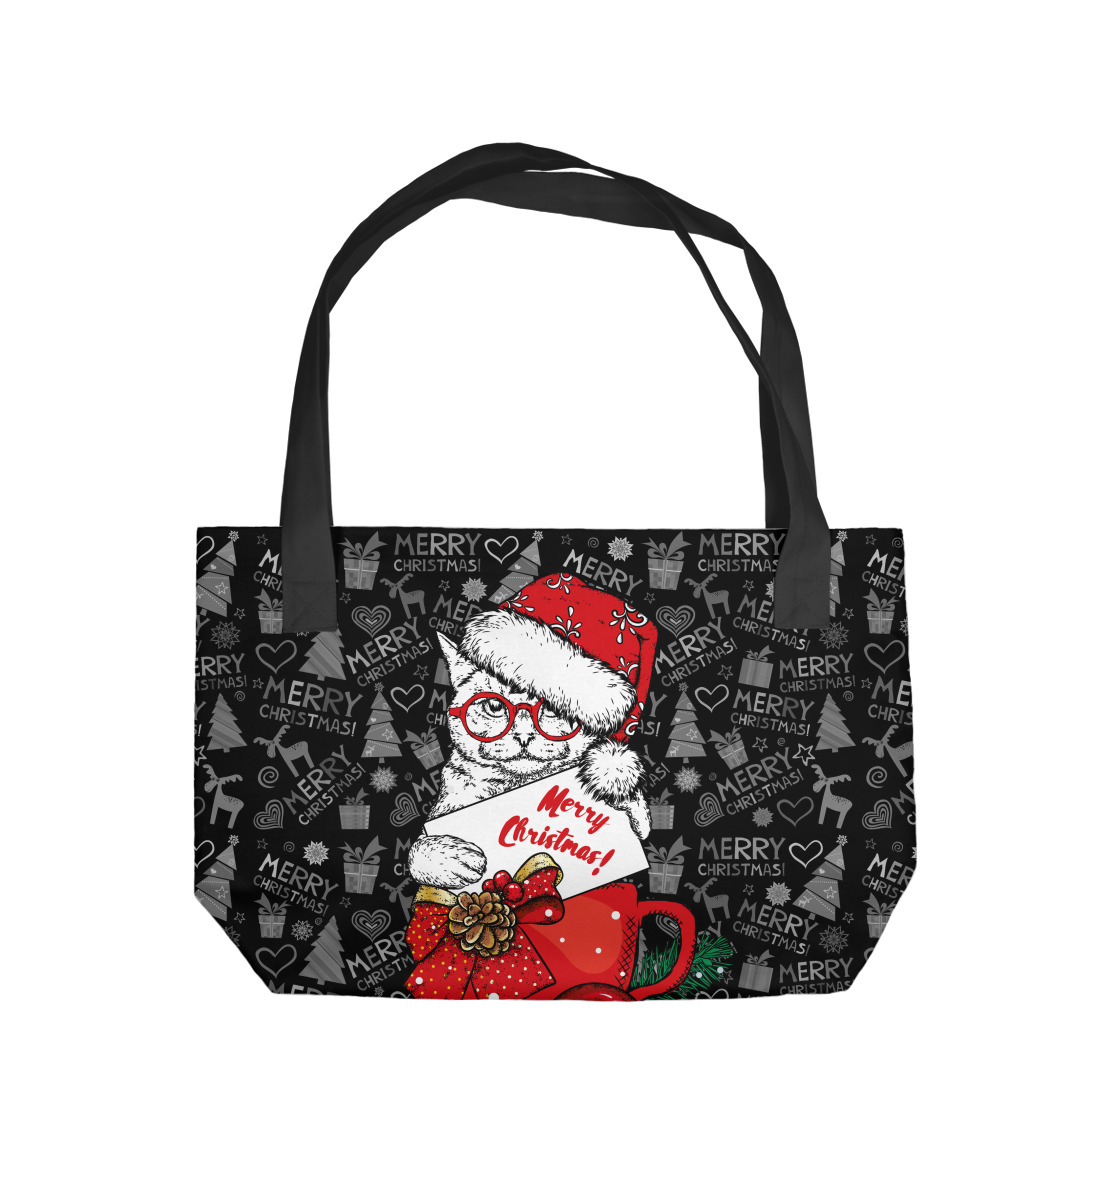 Купить Пляжная сумка Merry christmas, артикул NVR-983376-supmp